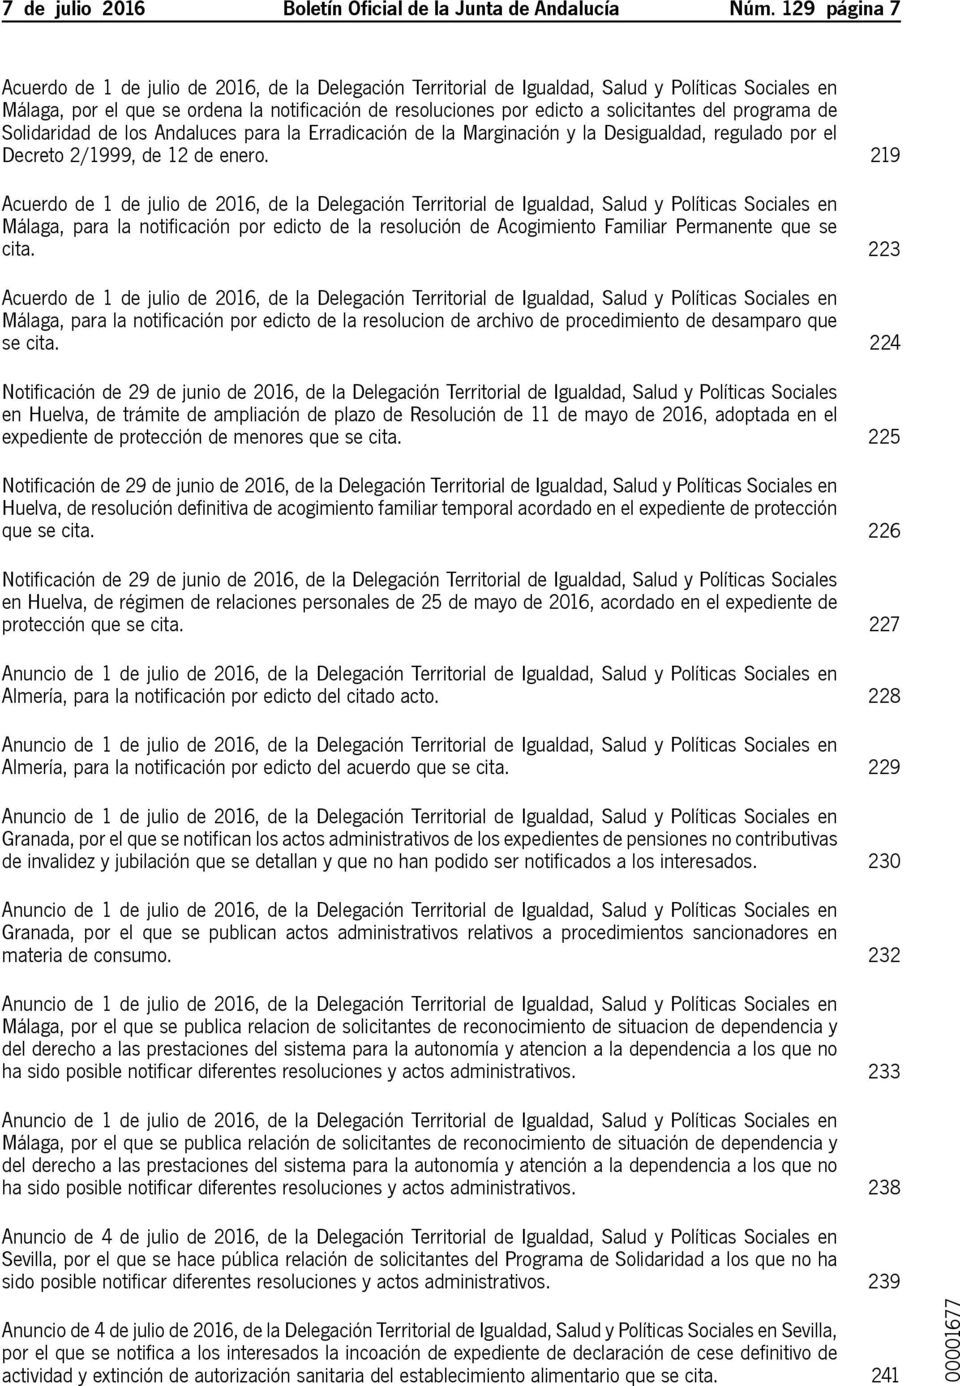 Desigualdad, regulado por el Decreto 2/1999, de 12 de enero. 219 Málaga, para la notificación por edicto de la resolución de Acogimiento Familiar Permanente que se cita.